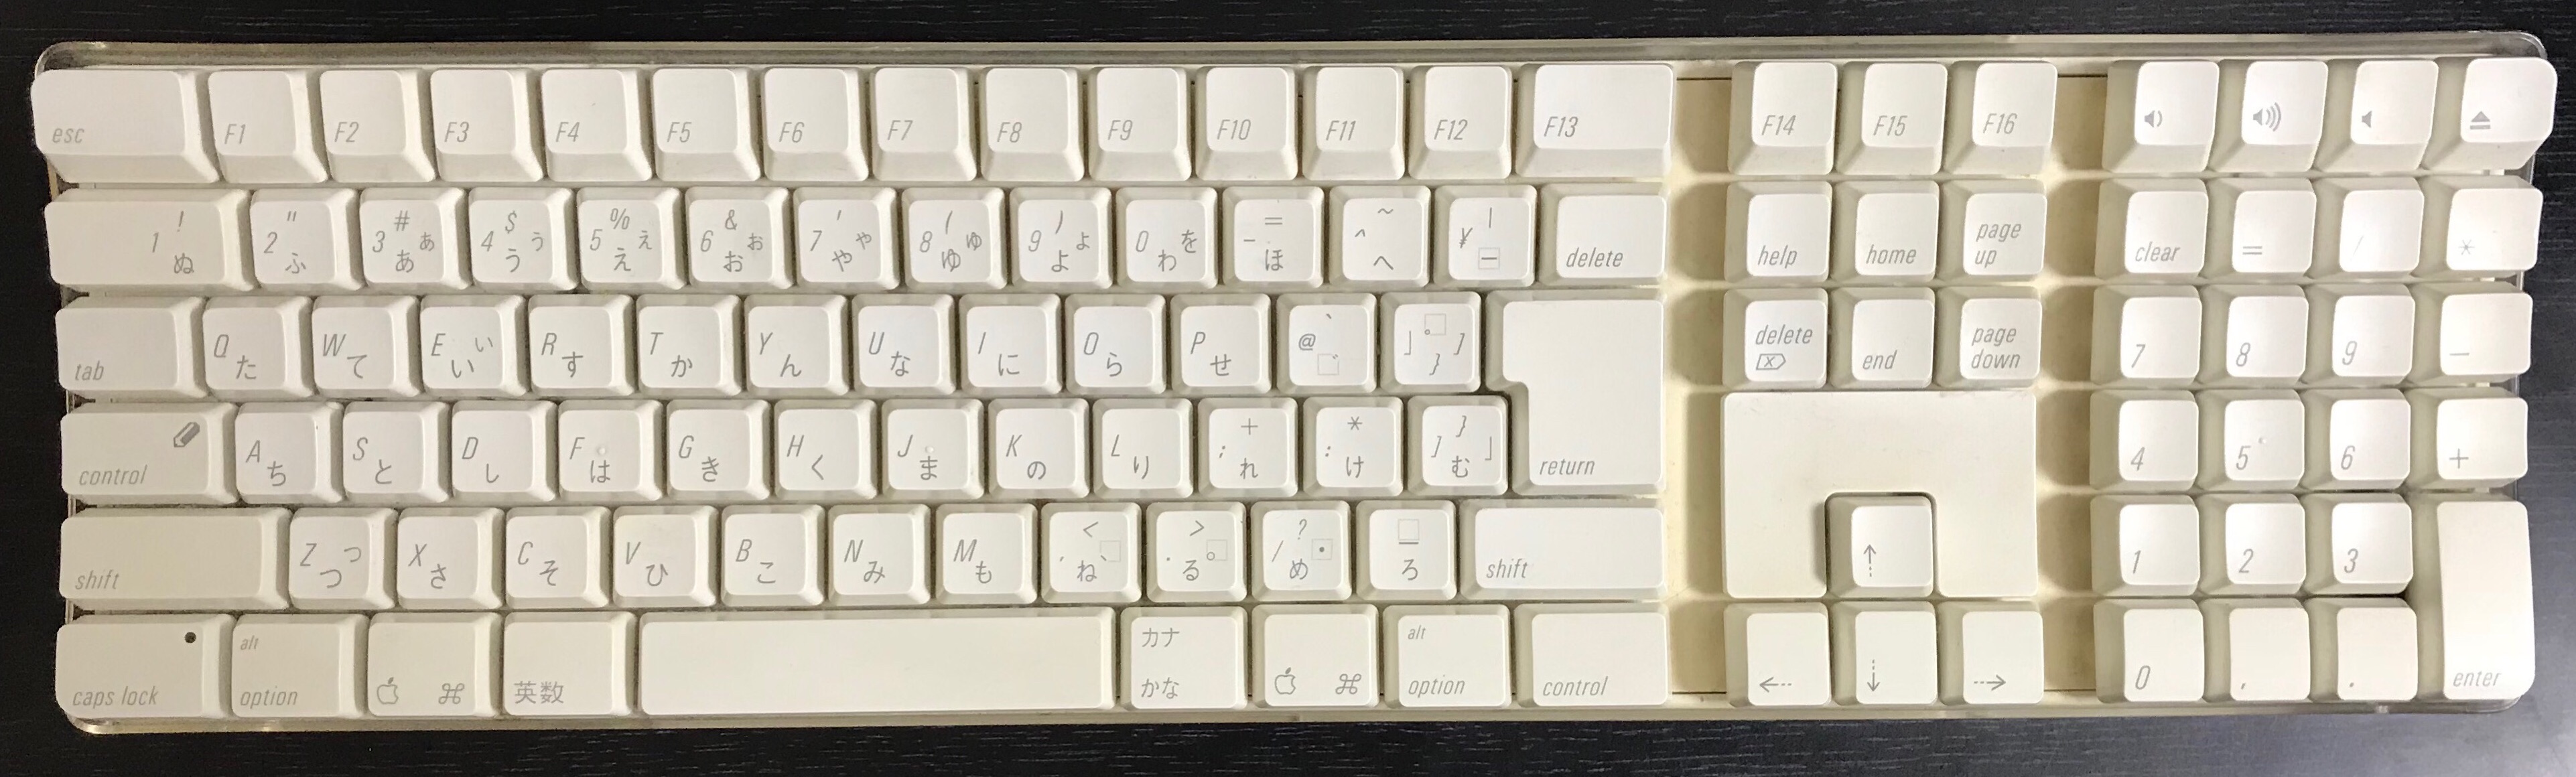 Apple Wireless Keyboard A1016 2個セット